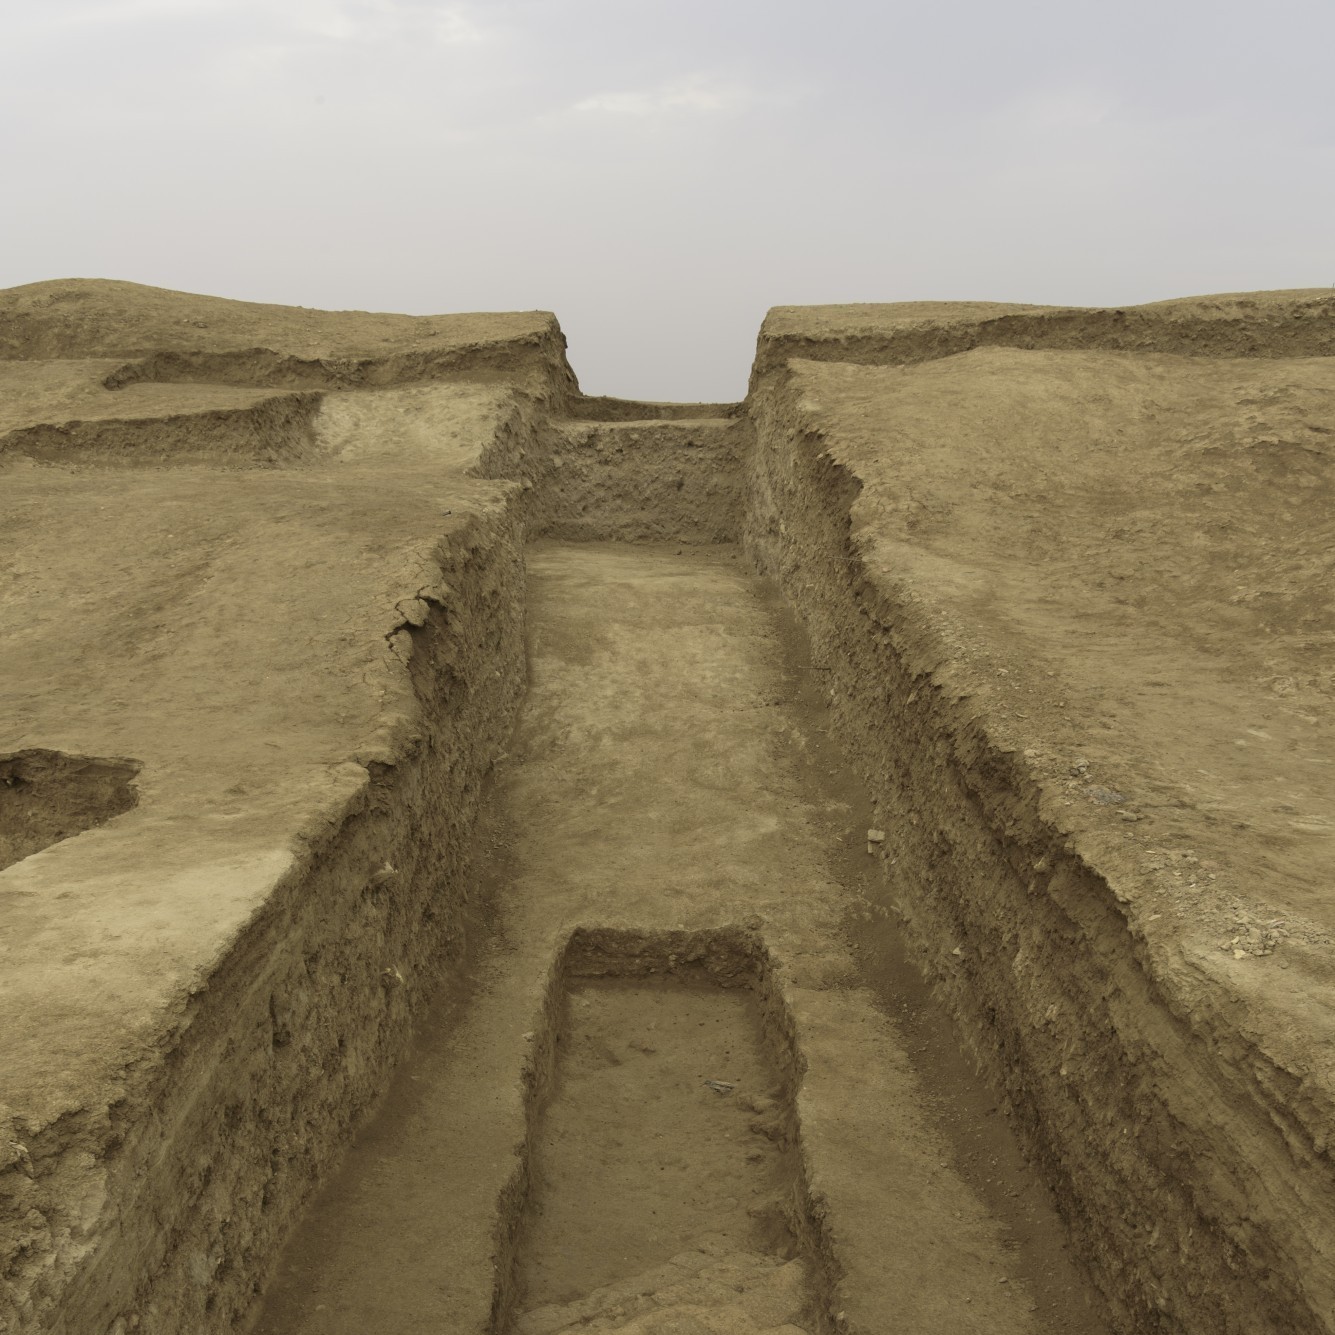 Parmi les vestiges archéologiques se trouvent les fondations d'un ancien palais découvertes sous les décombres des fouilles du XIXe siècle.